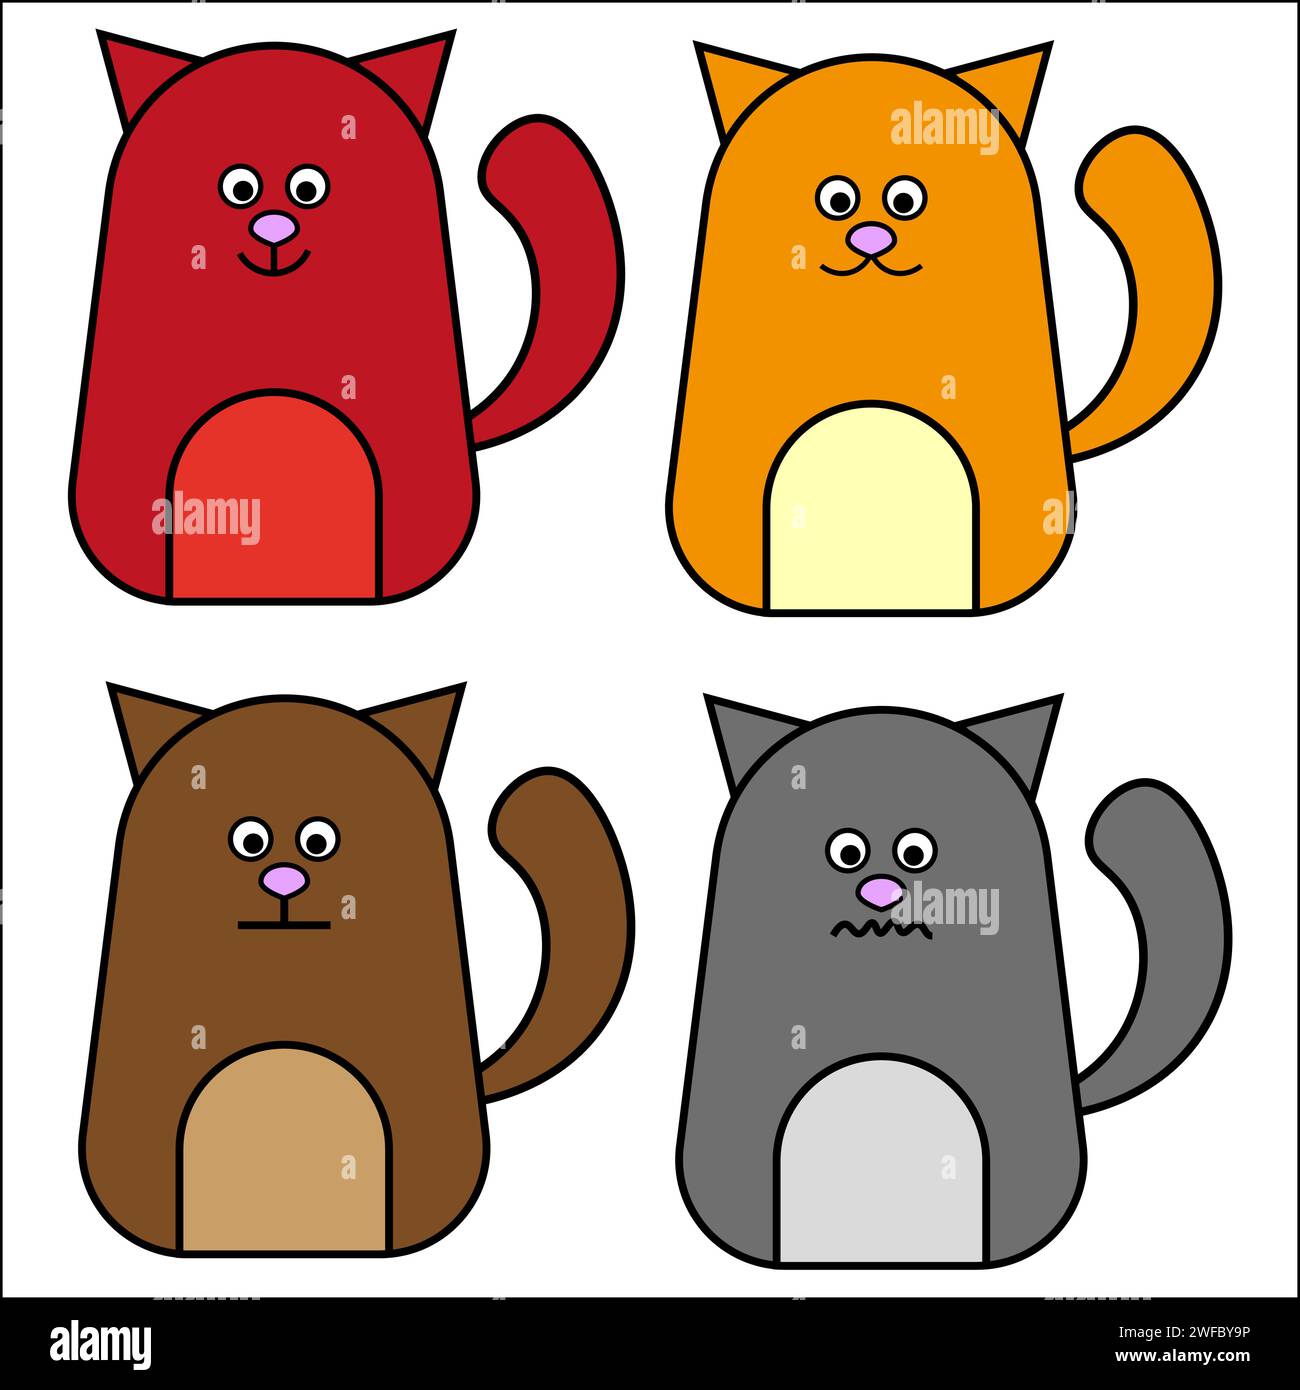 Carino set di icone gatto. Animali comici colorati. Faccia emotiva. Stile cartoni animati. Arte creativa. Illustrazione vettoriale. Immagine stock. EPS 10. Illustrazione Vettoriale